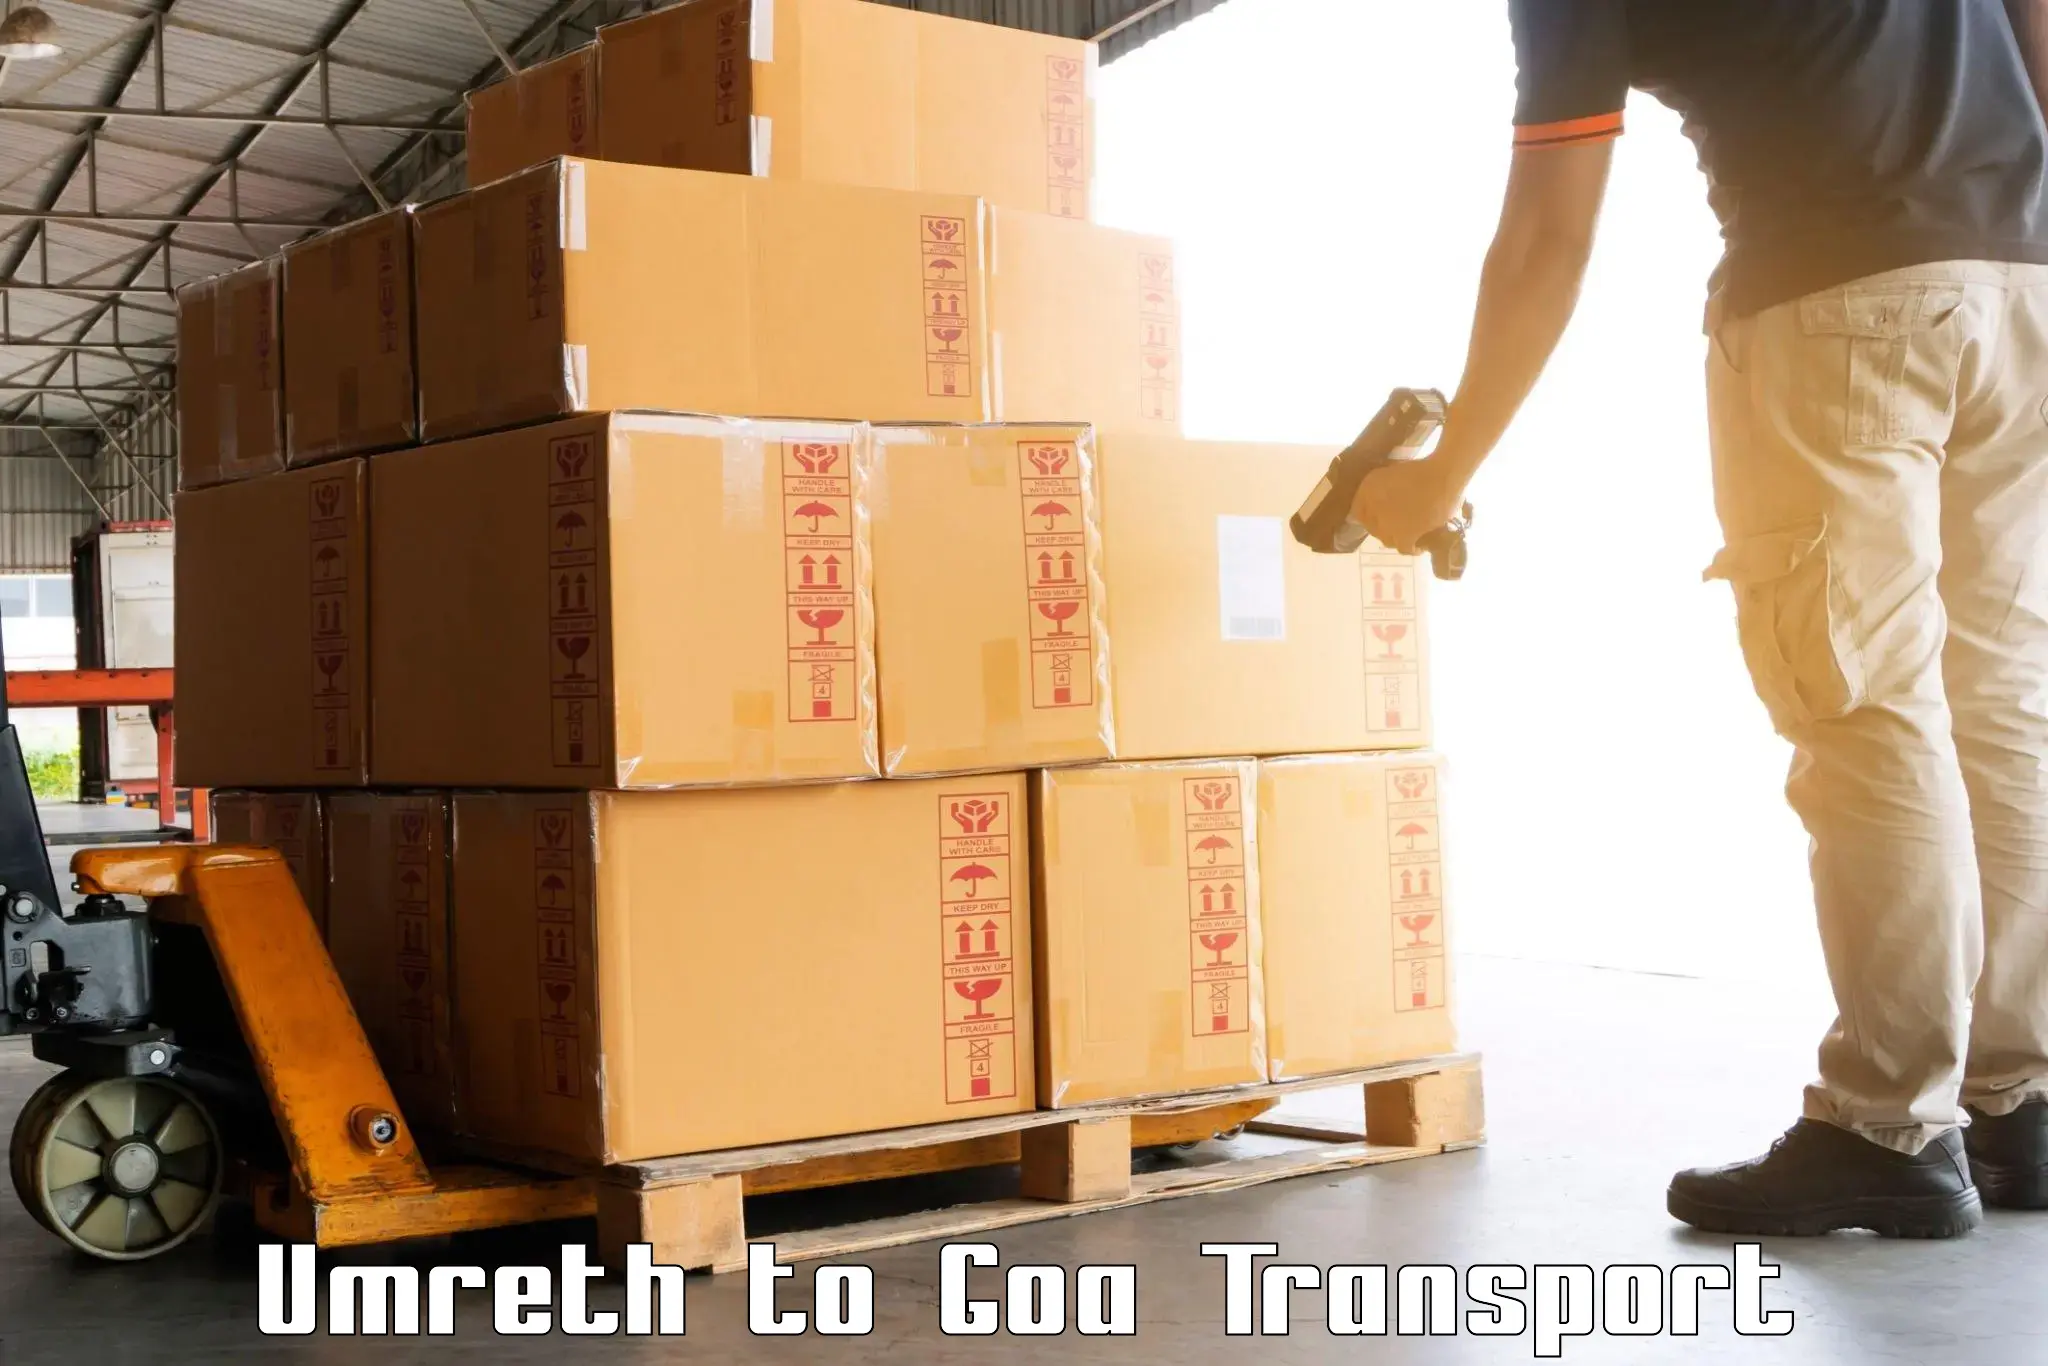 Scooty parcel Umreth to NIT Goa